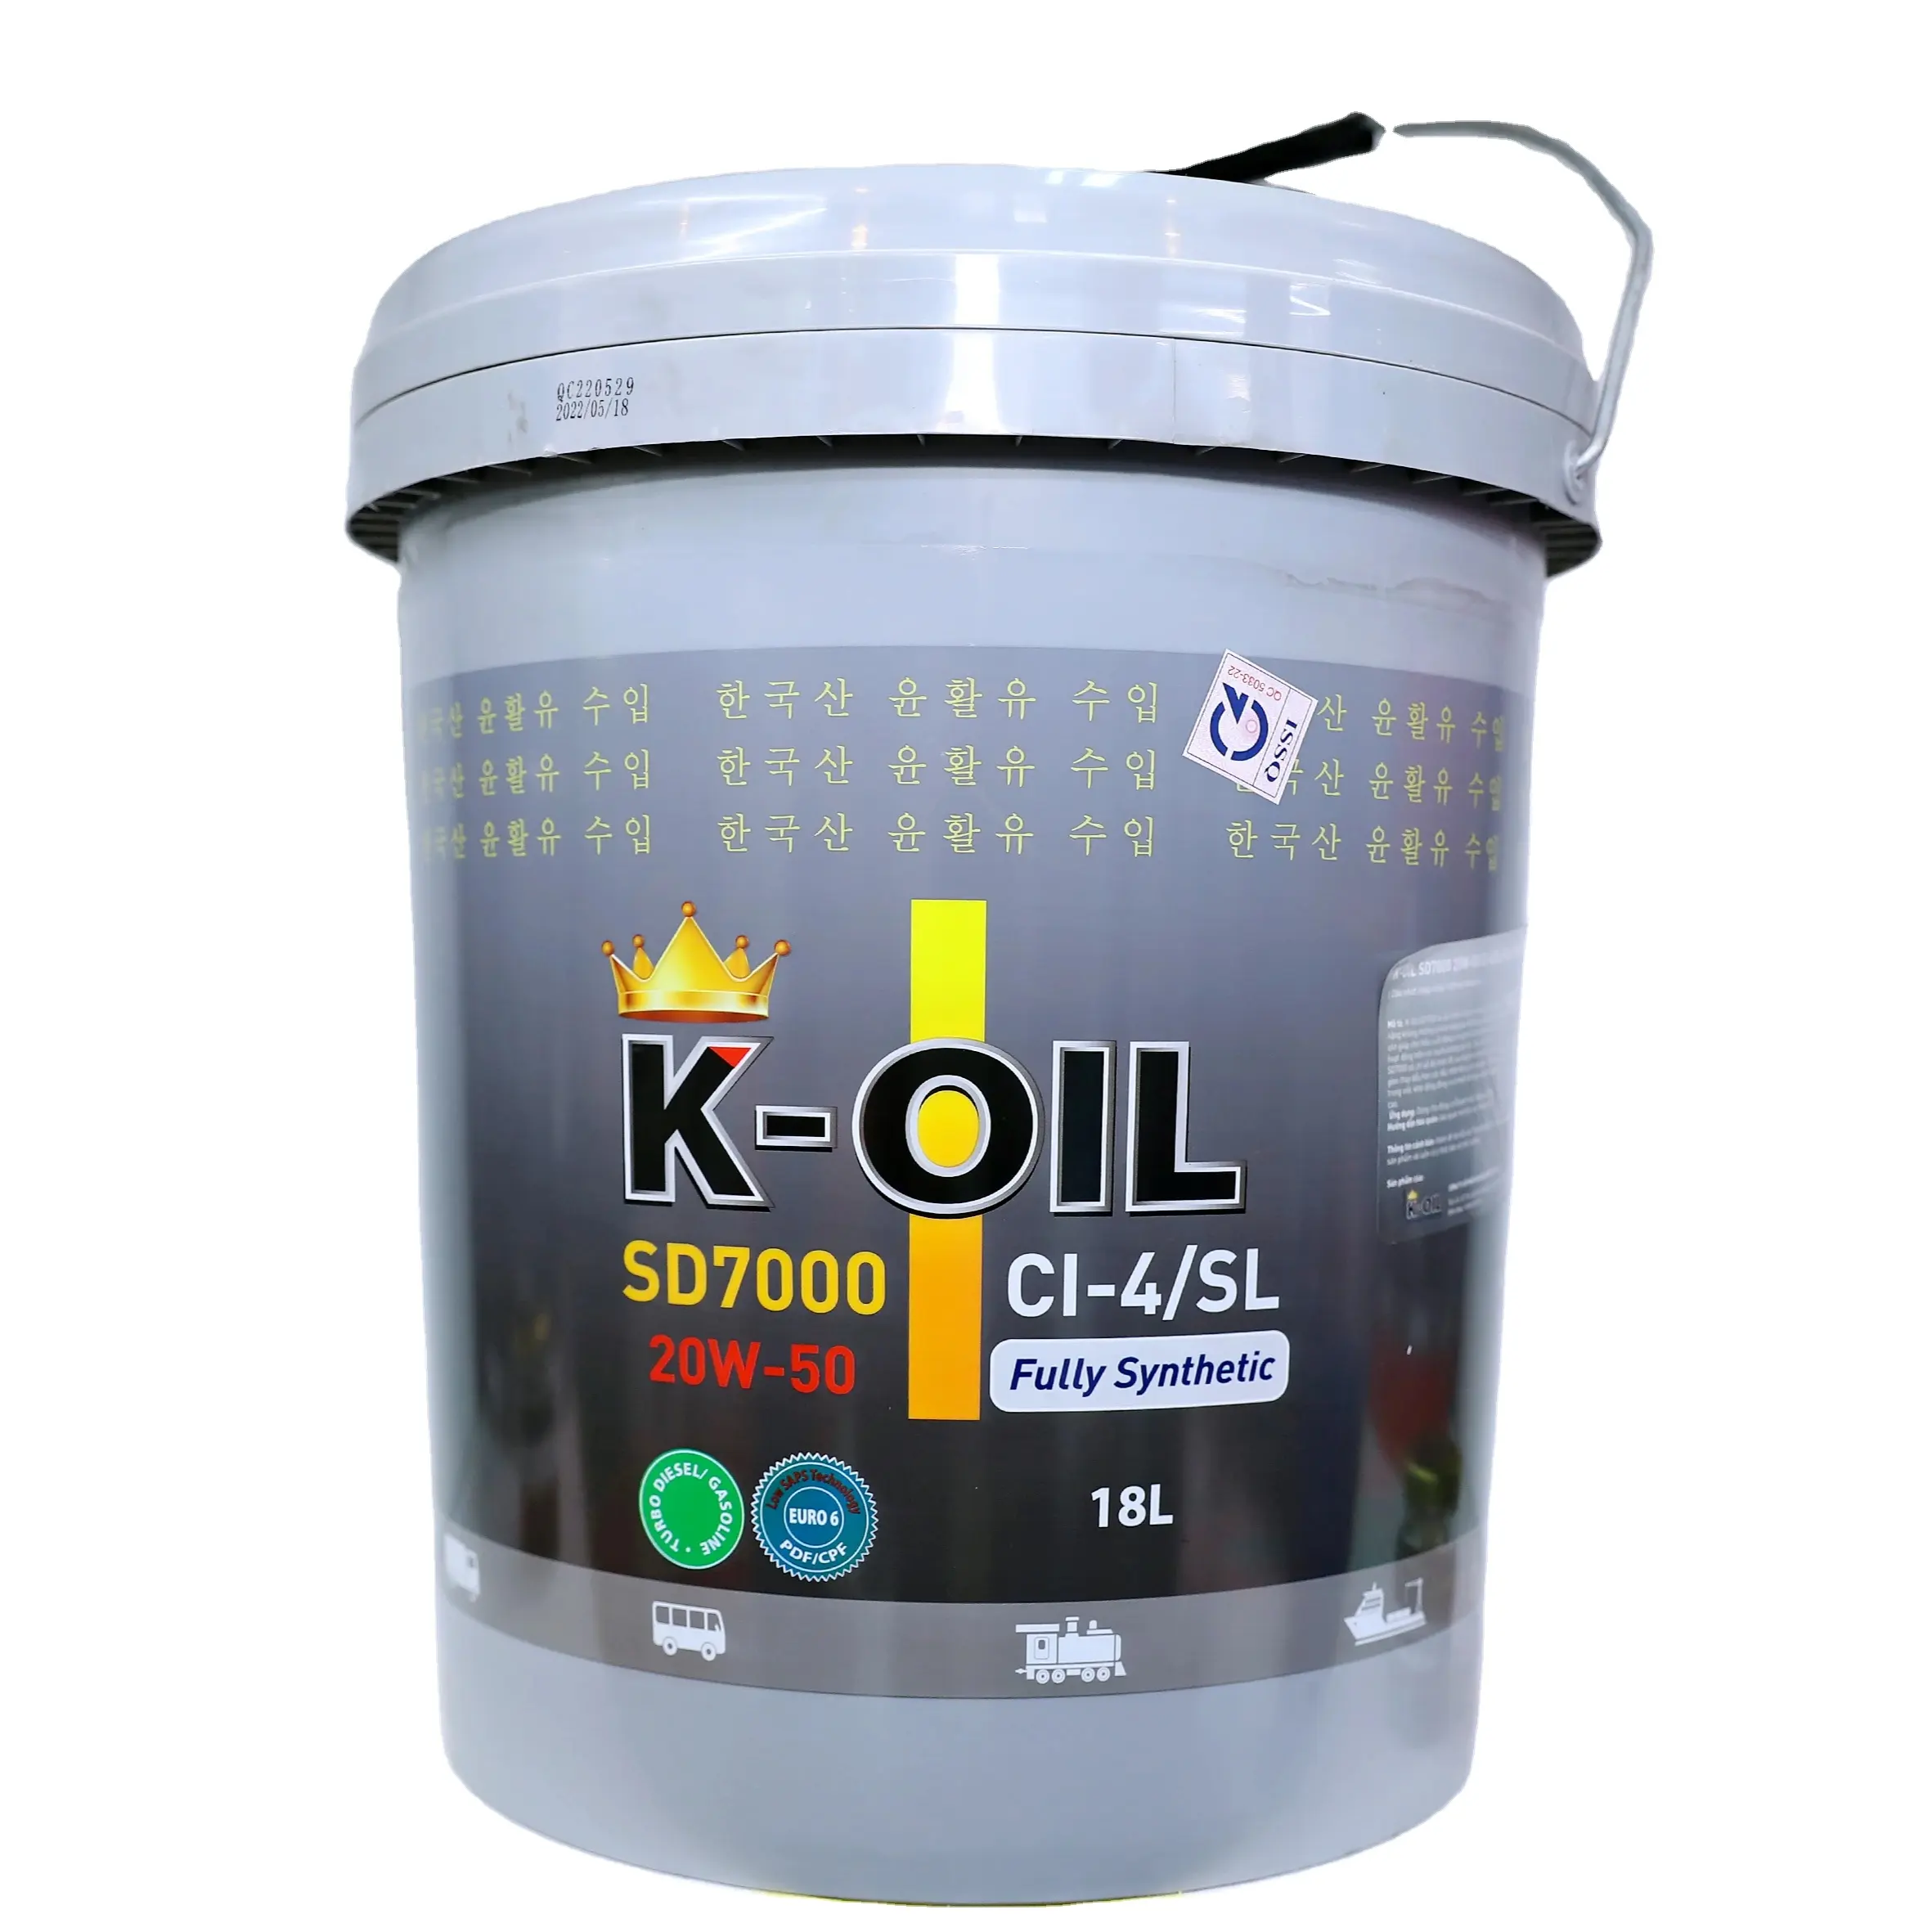 K-OIL sd7000 15W40/20W50 CL-4/SL hoàn toàn tổng hợp nhiên liệu hiệu quả chất lượng tốt nhất và giá tốt ứng dụng cho công nghiệp